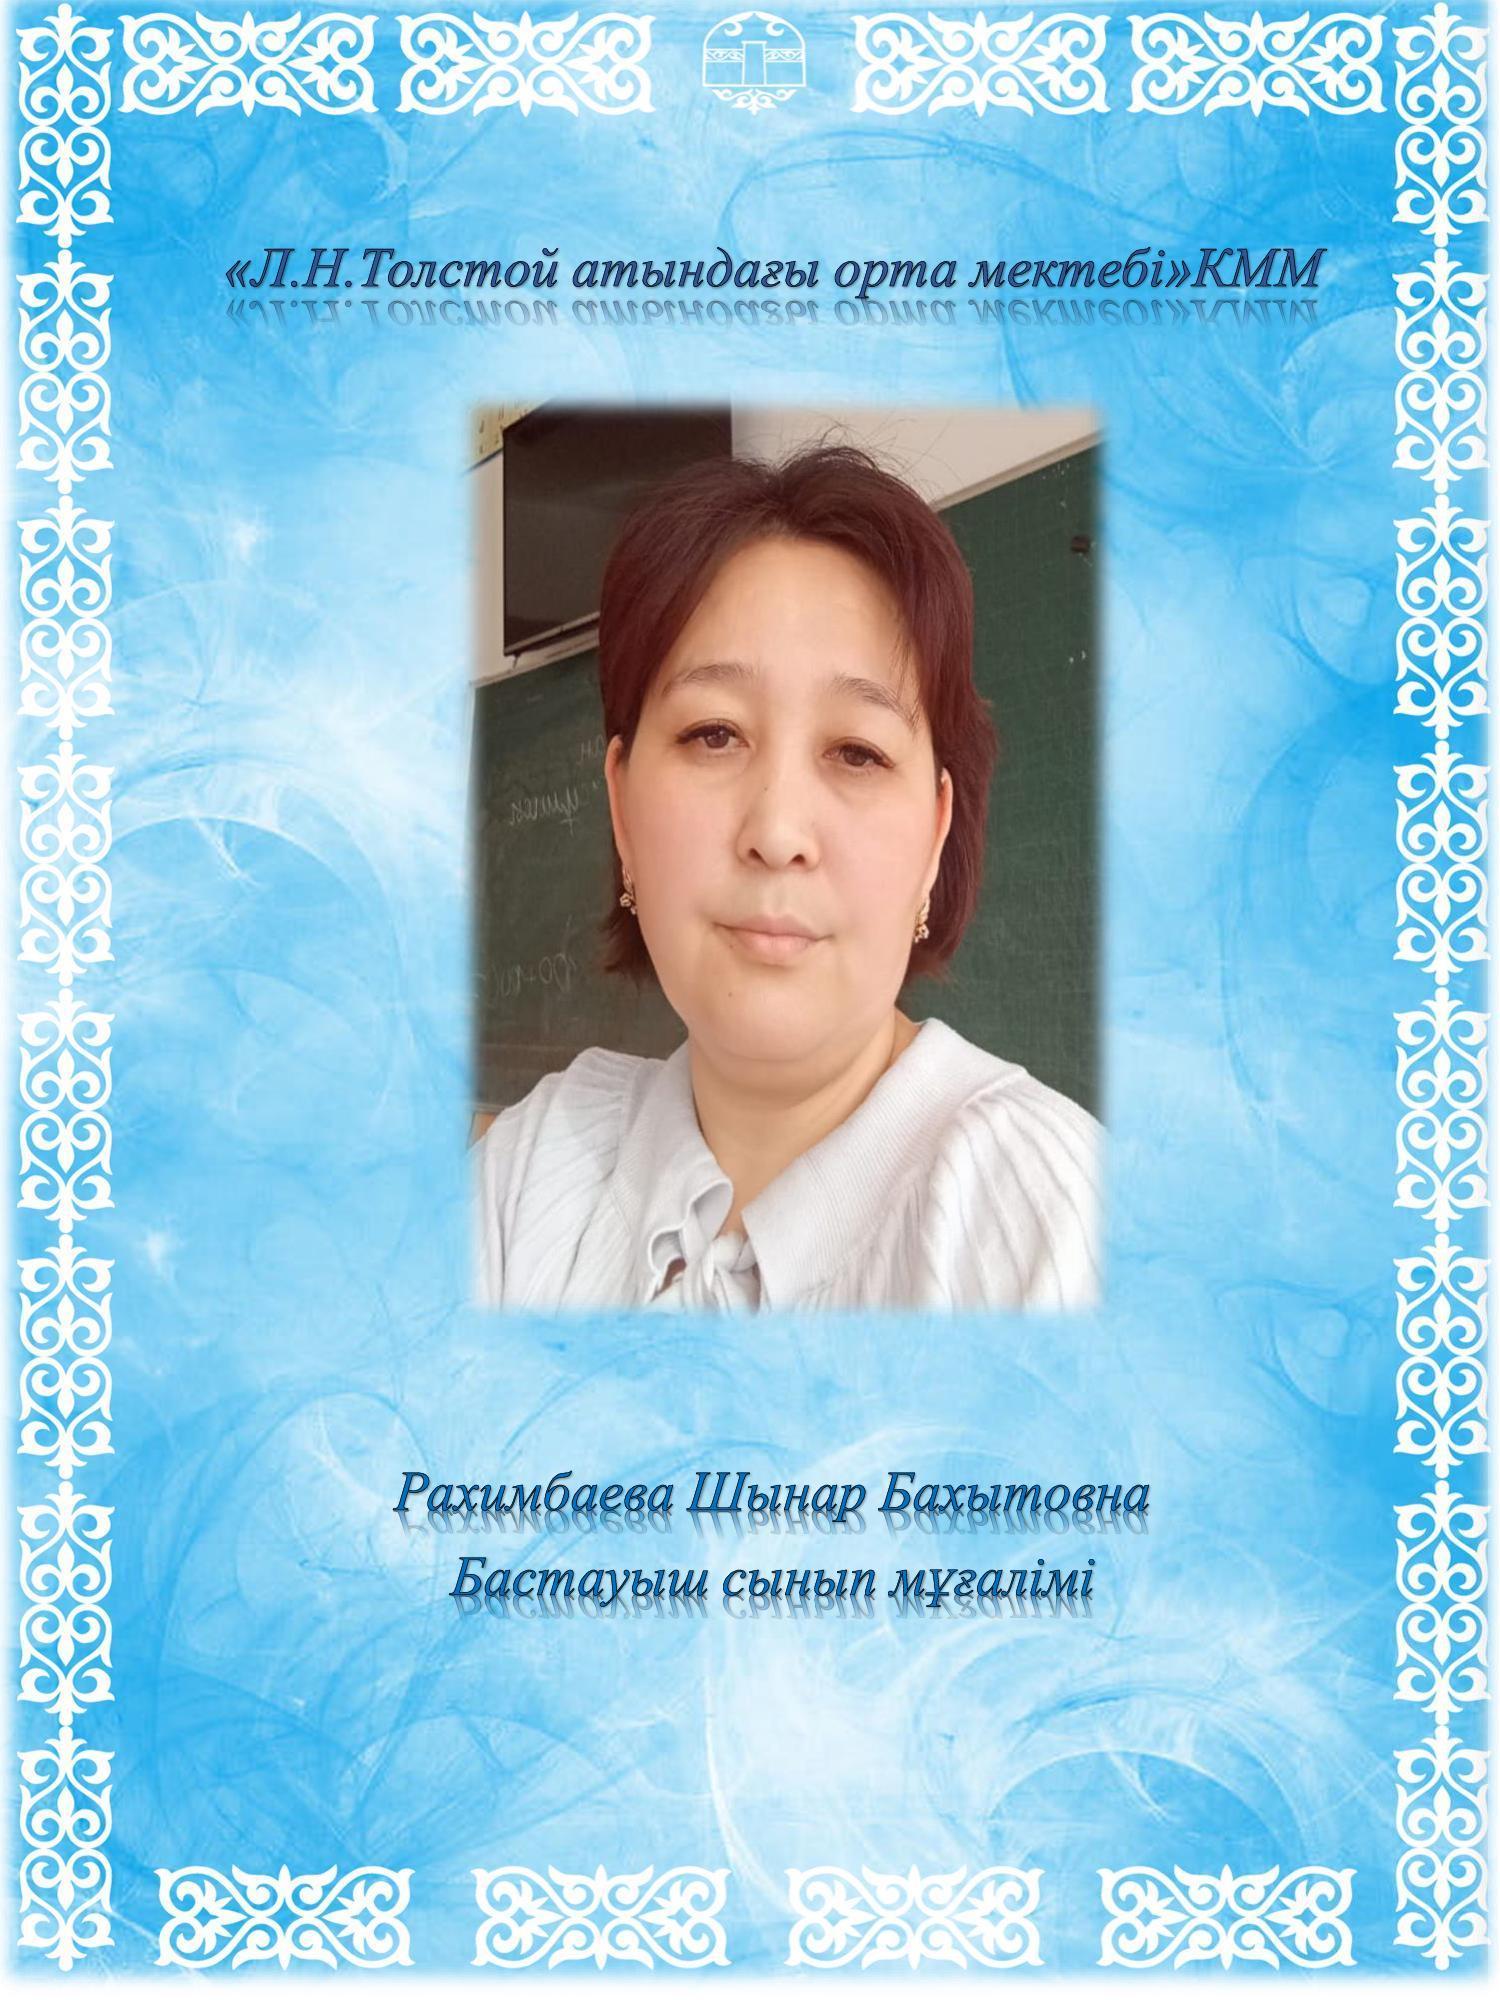 Рахимбаева Шынар Бахытовна